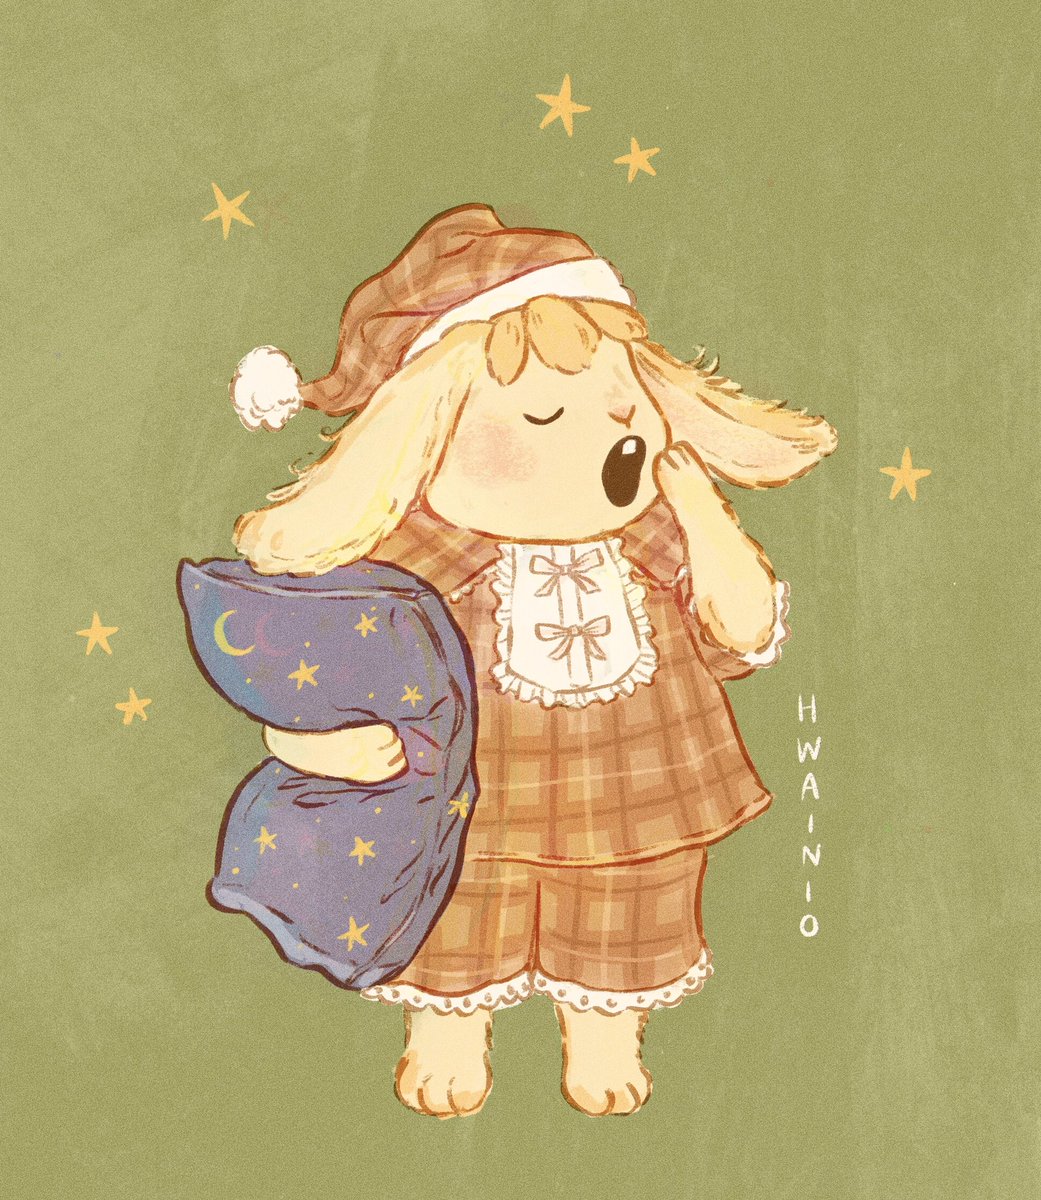 「Sleepy sleepy sleepy  」|🌿🍄 Hanna 🍄🌿 in Japan!のイラスト